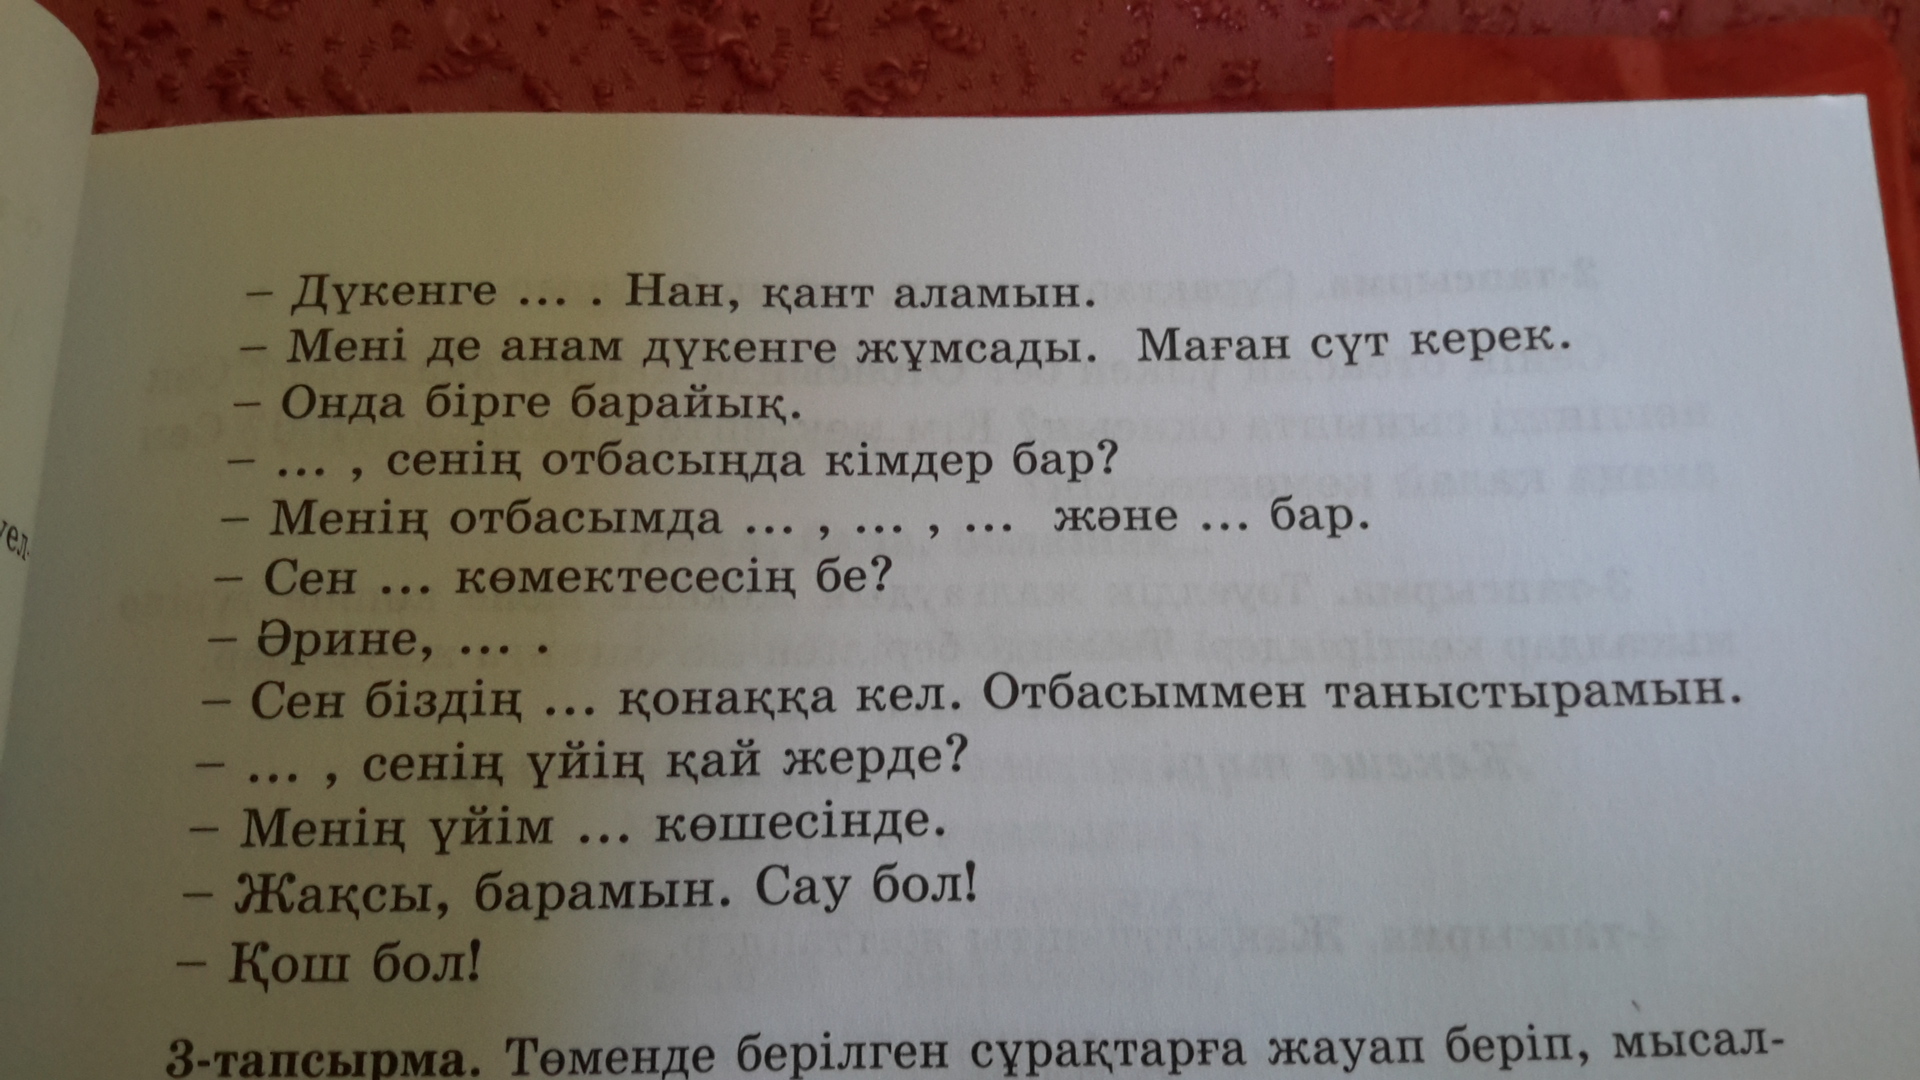 Фразы на казахском